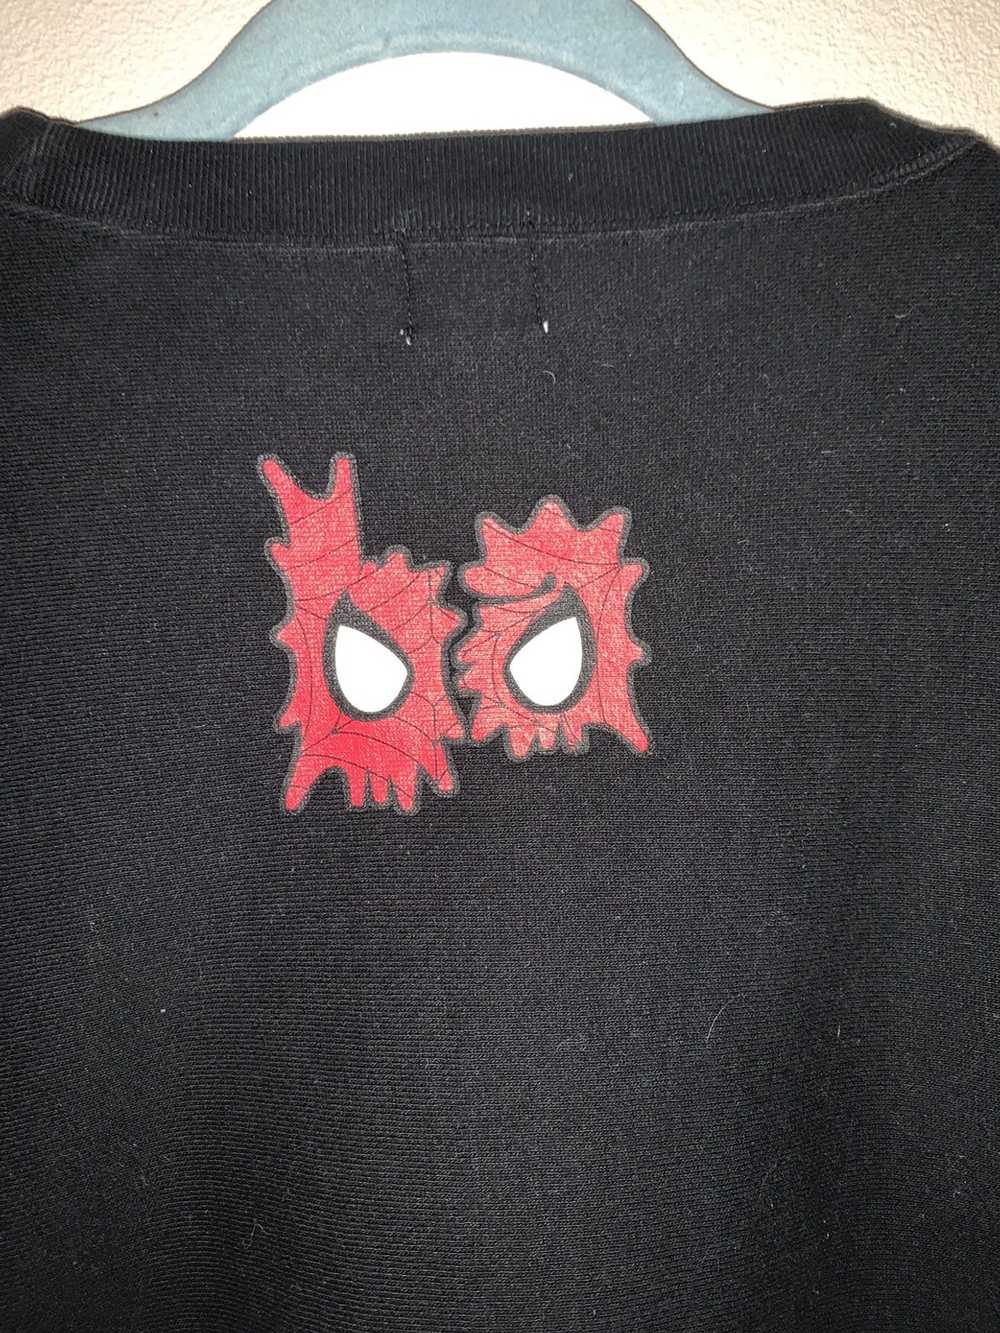 Bape Vintage Spider-Man Crewneck - image 3